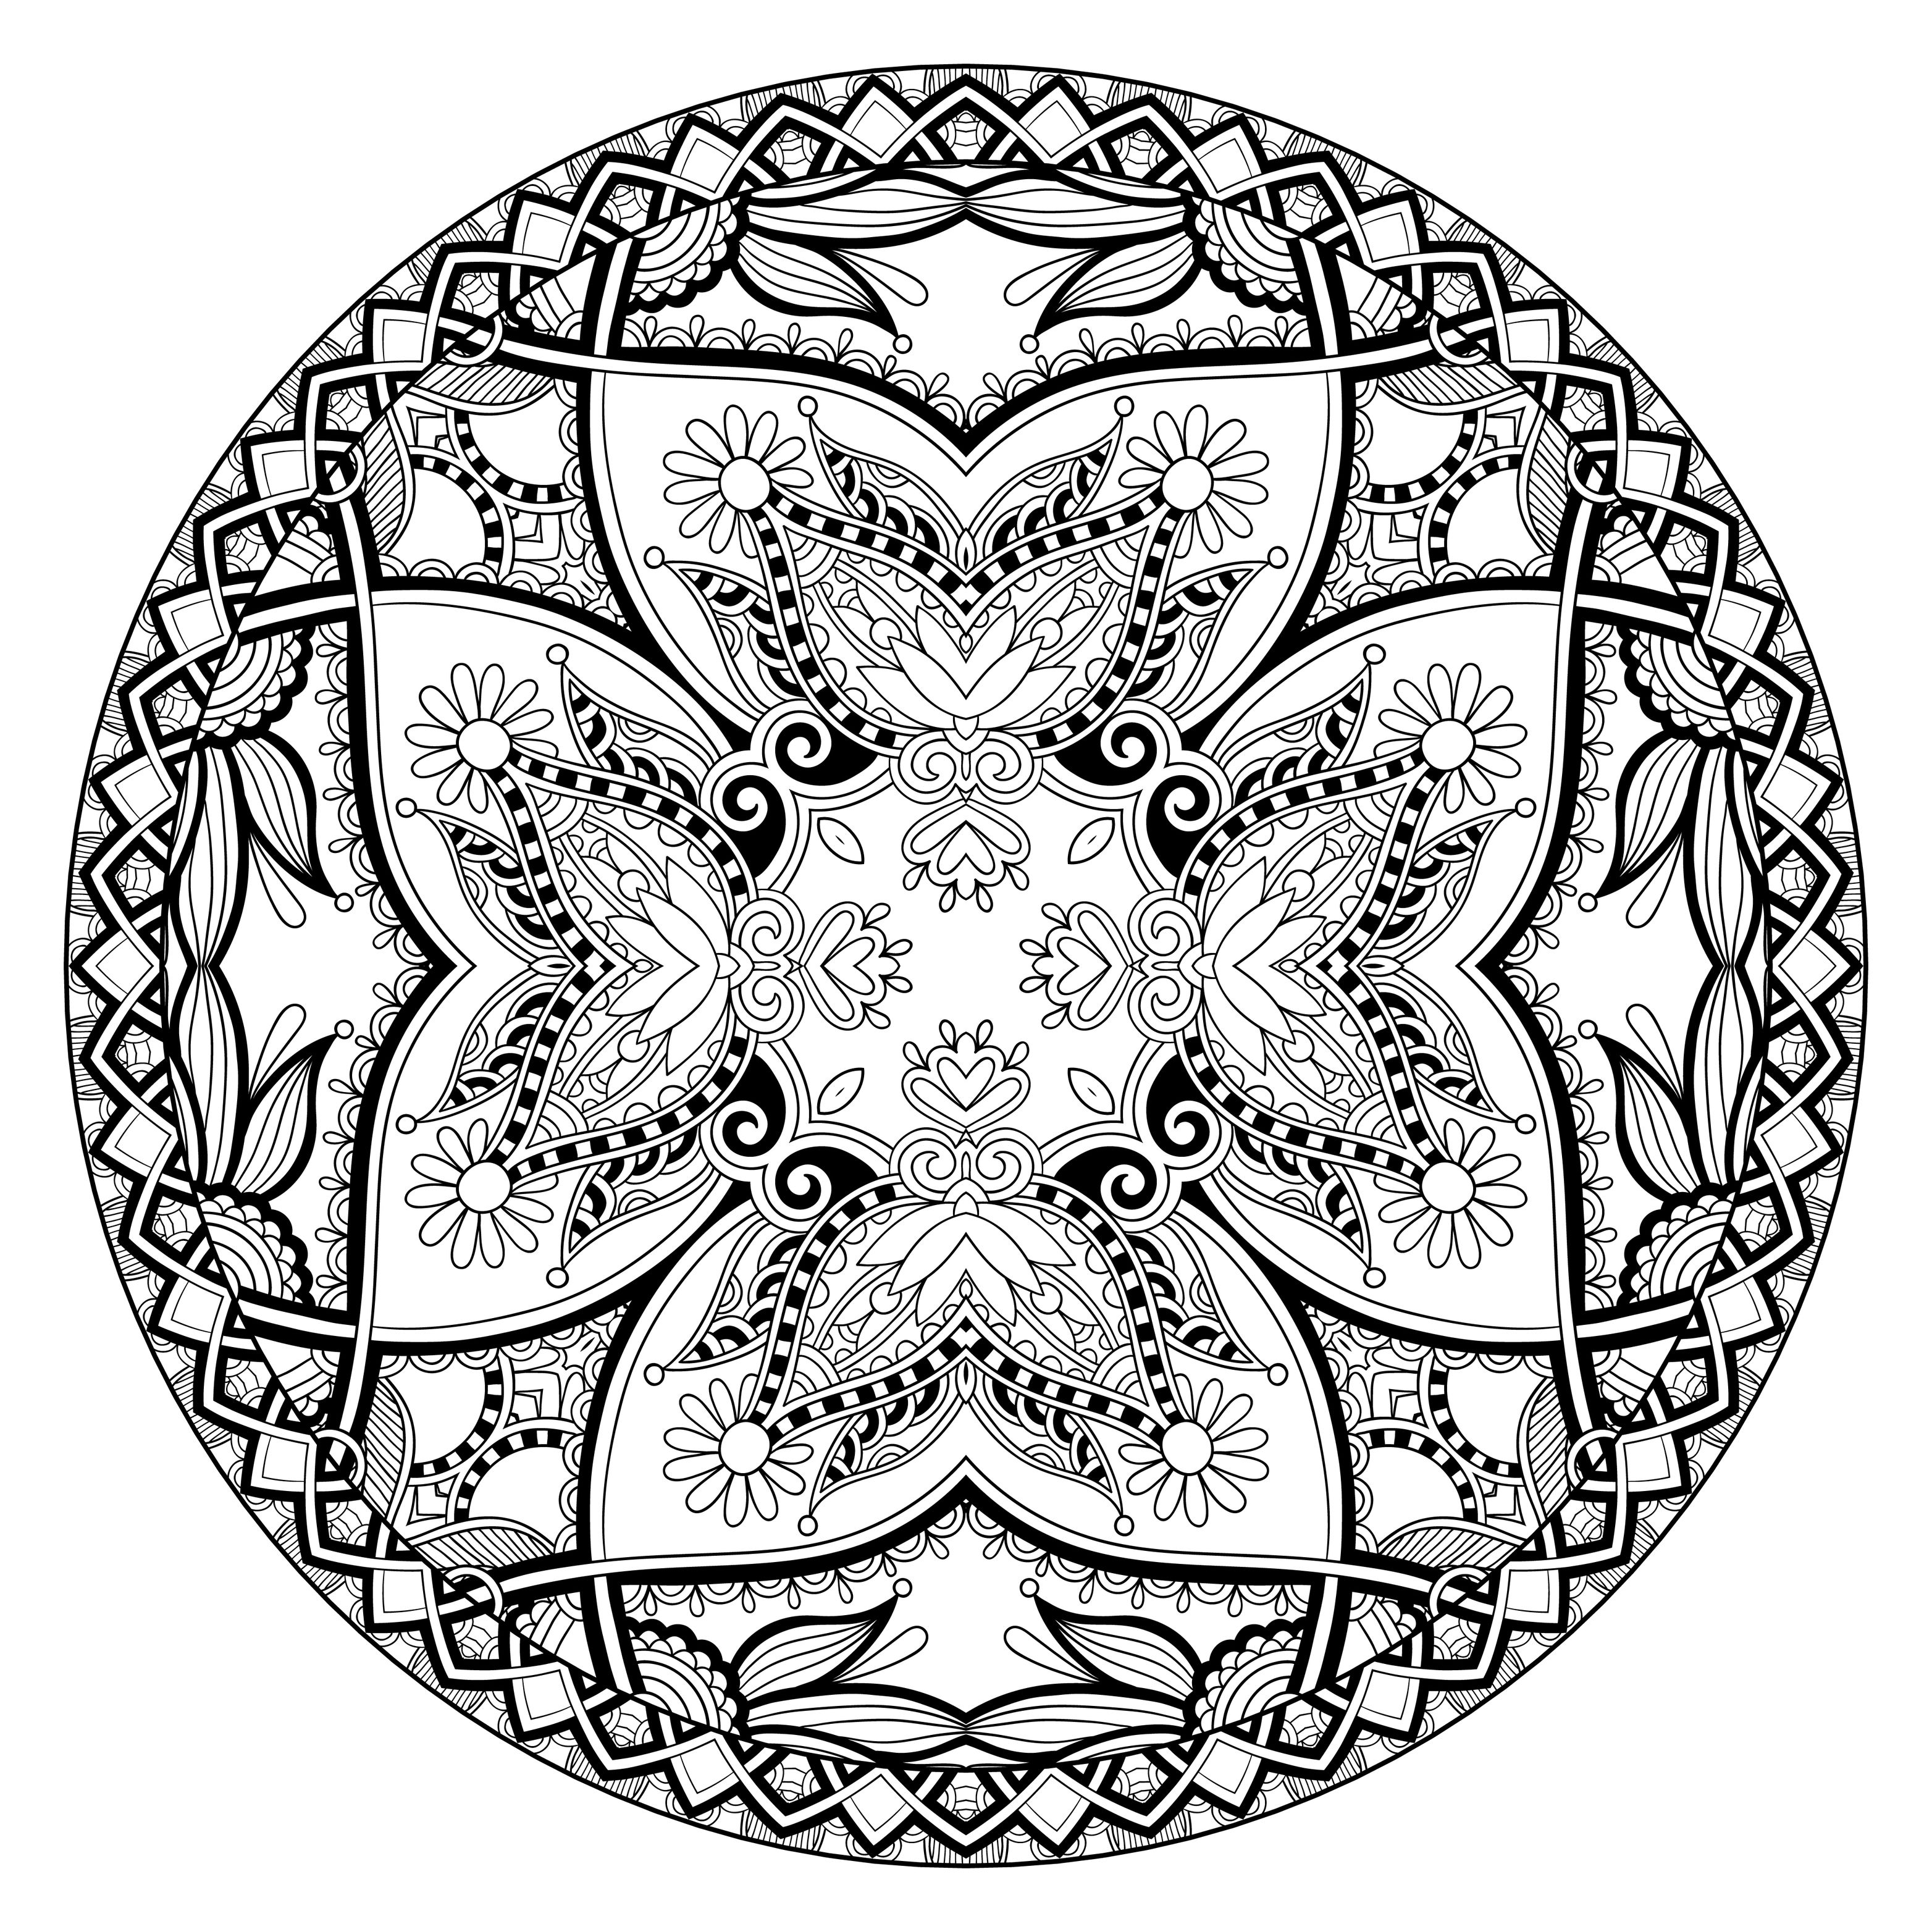 Mandala par karakotsya - 1 - Image avec : , 